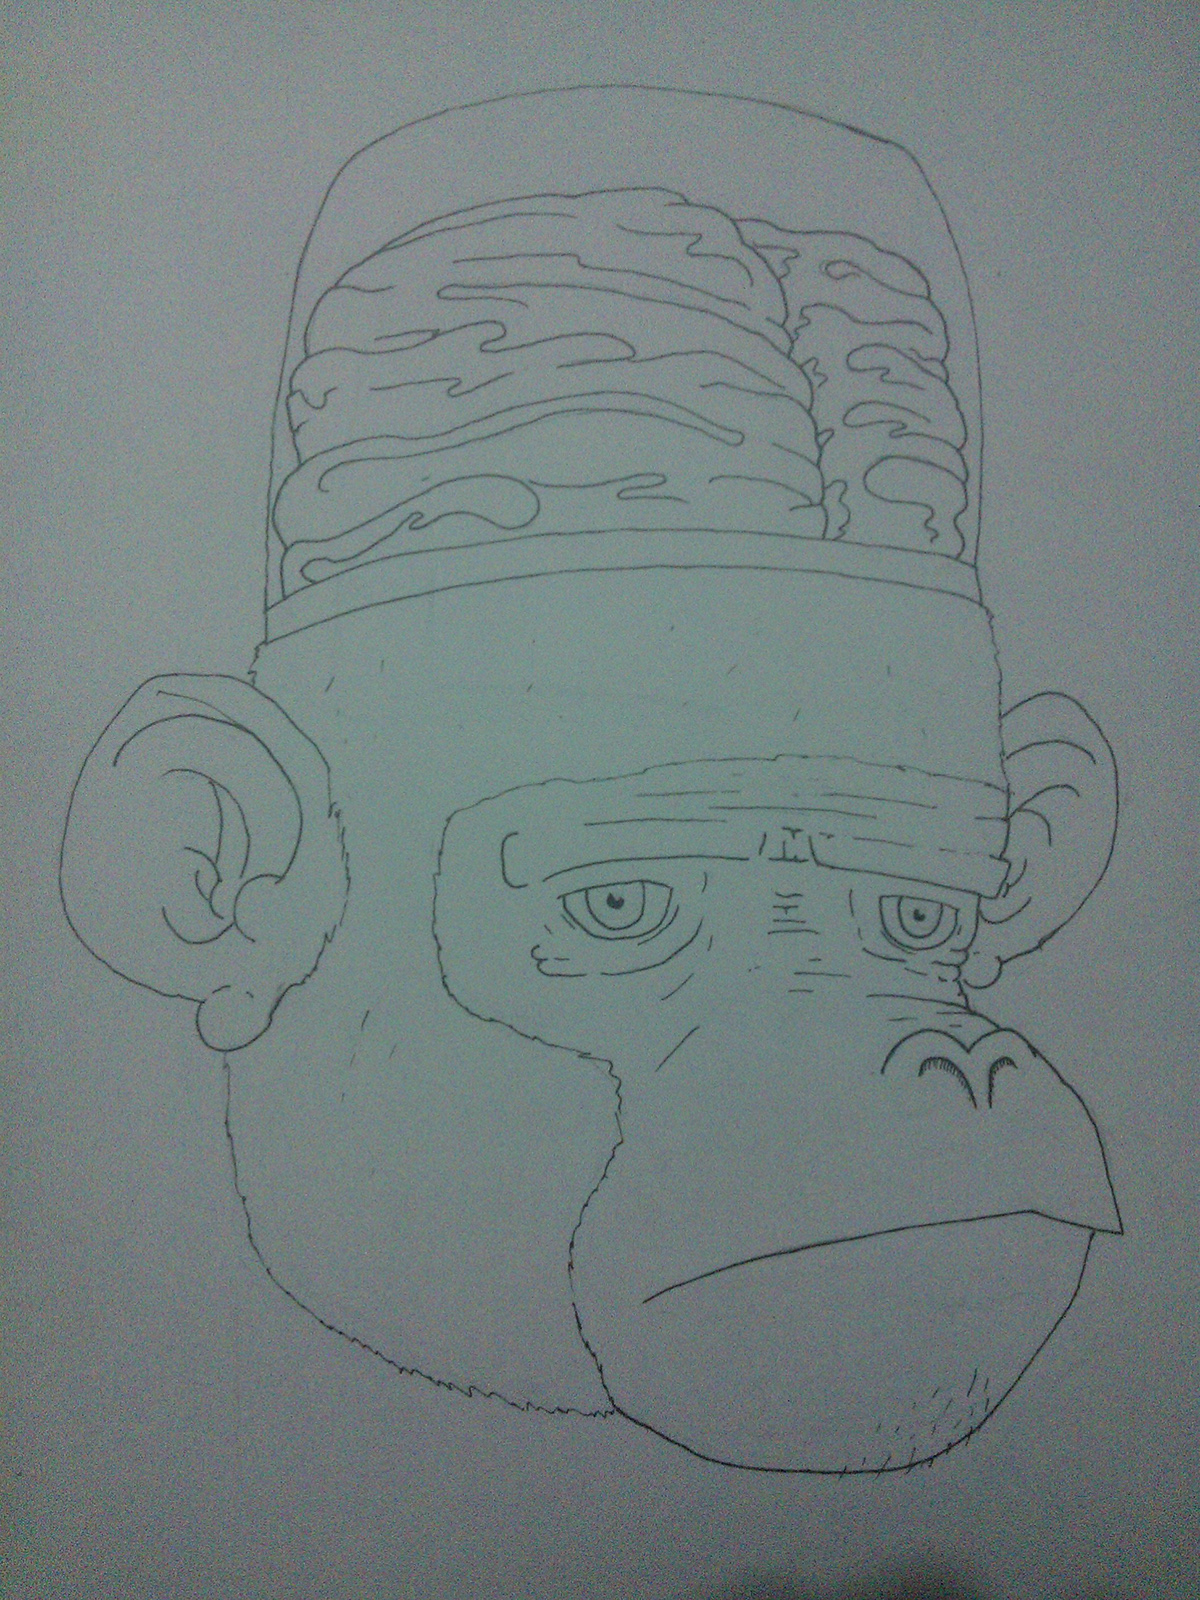 monkey funny sketch brain cartoon